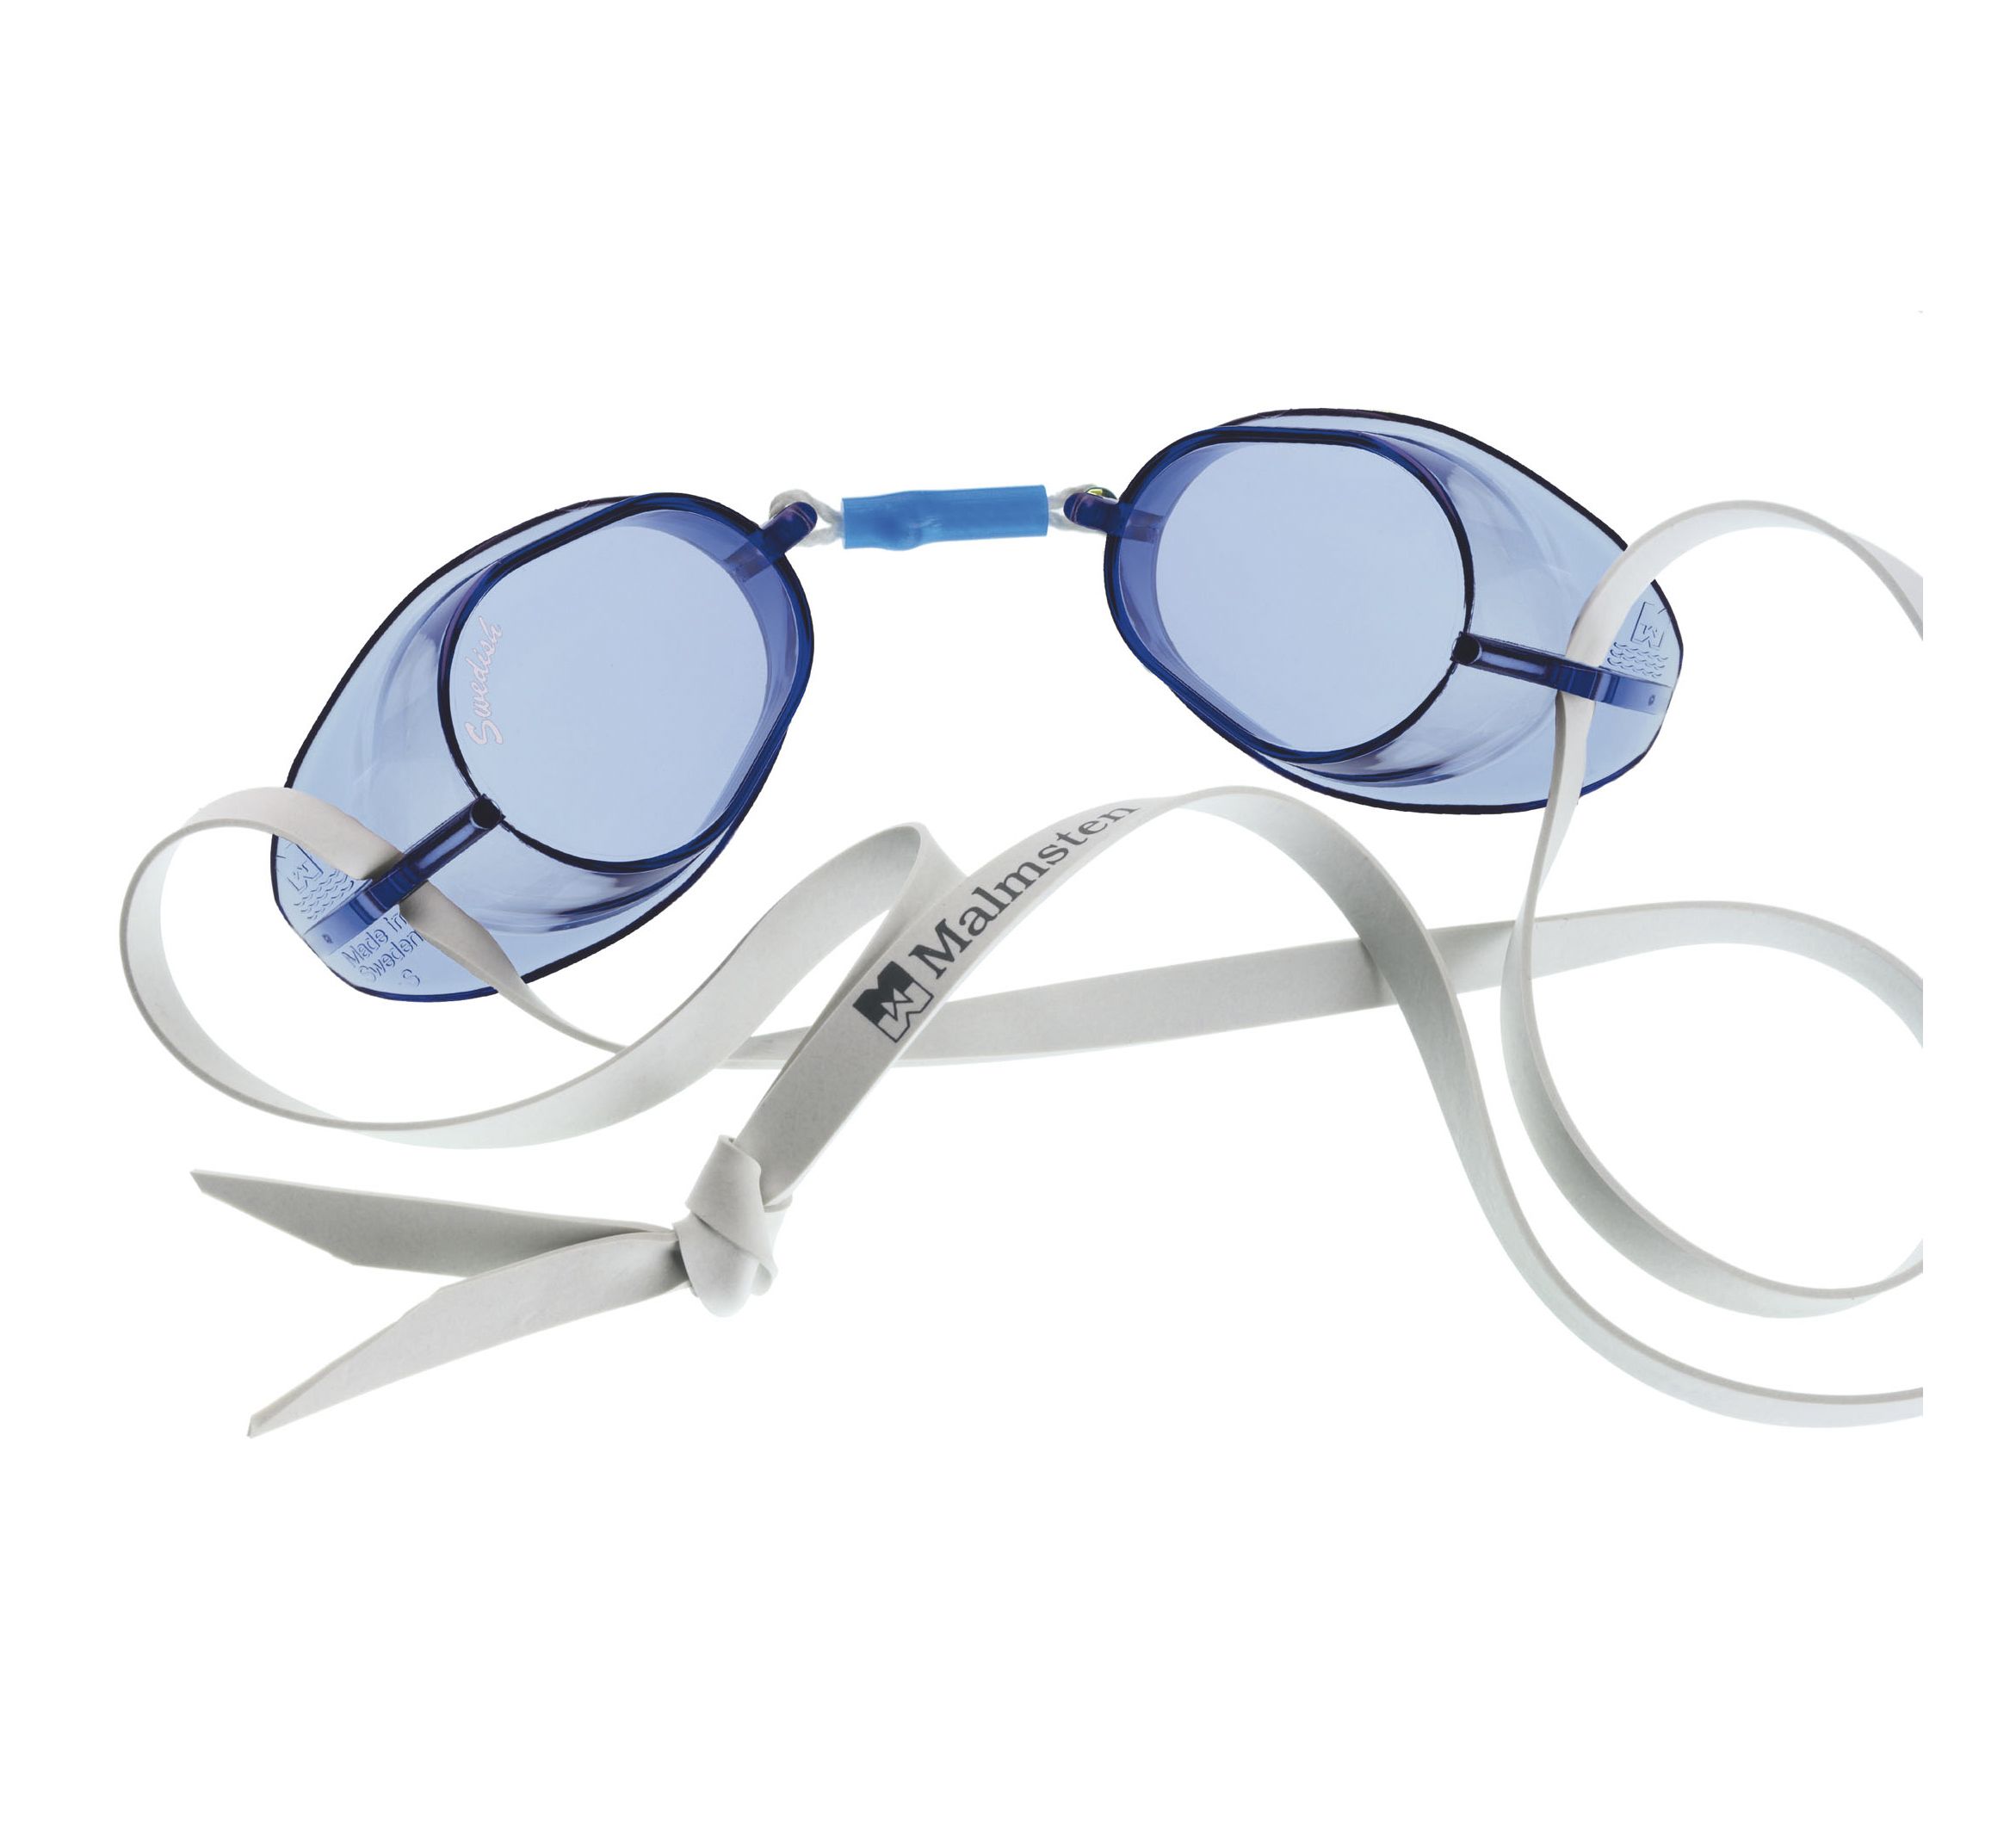 Beco окуляри-шведки для плавання